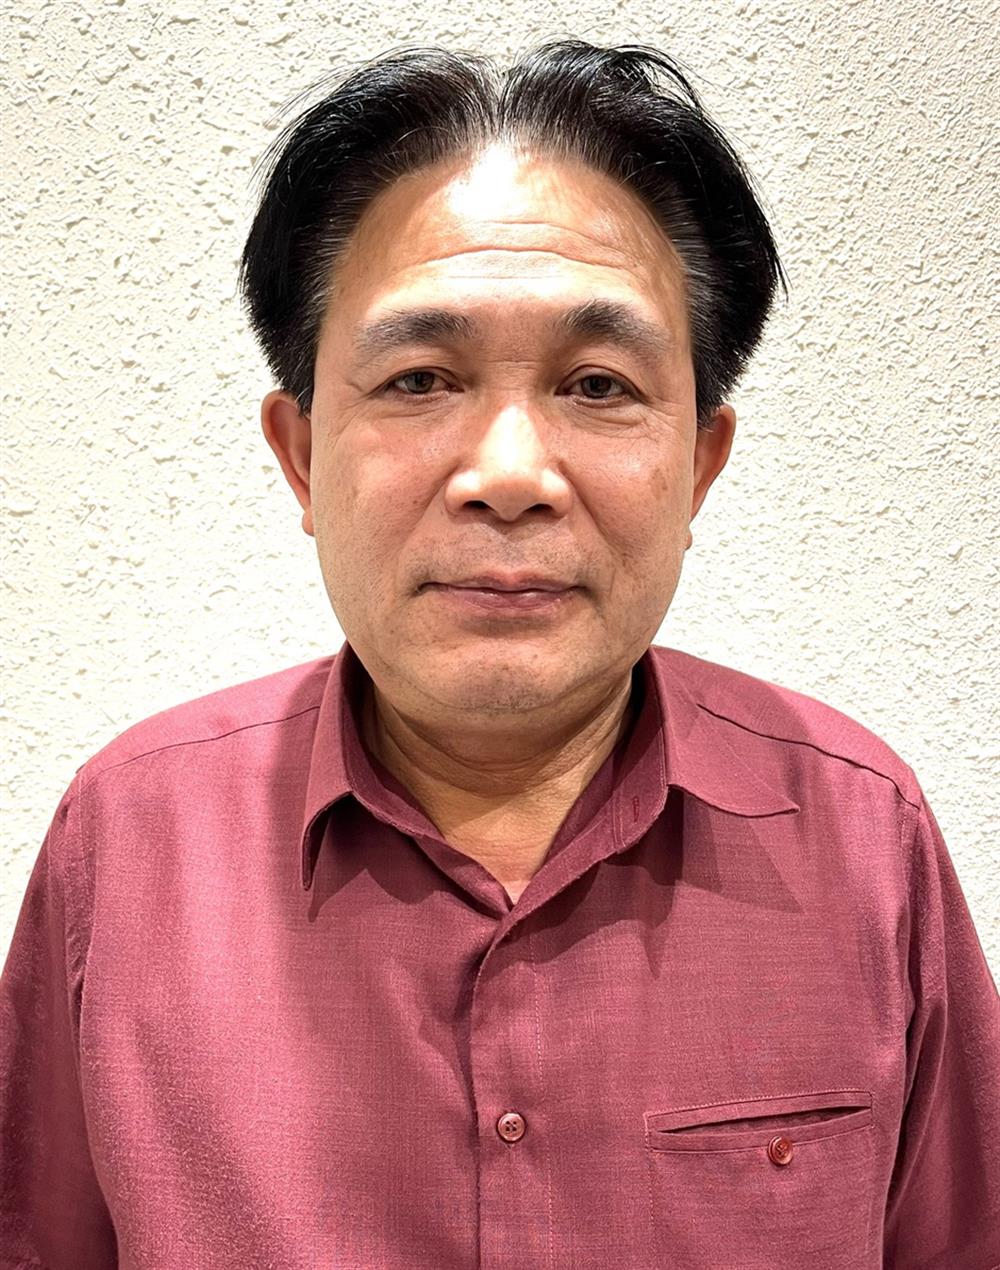 Khởi tố bị can đối với ông Nguyễn Văn Yên, nguyên Phó Trưởng ban Ban Nội chính Trung ương